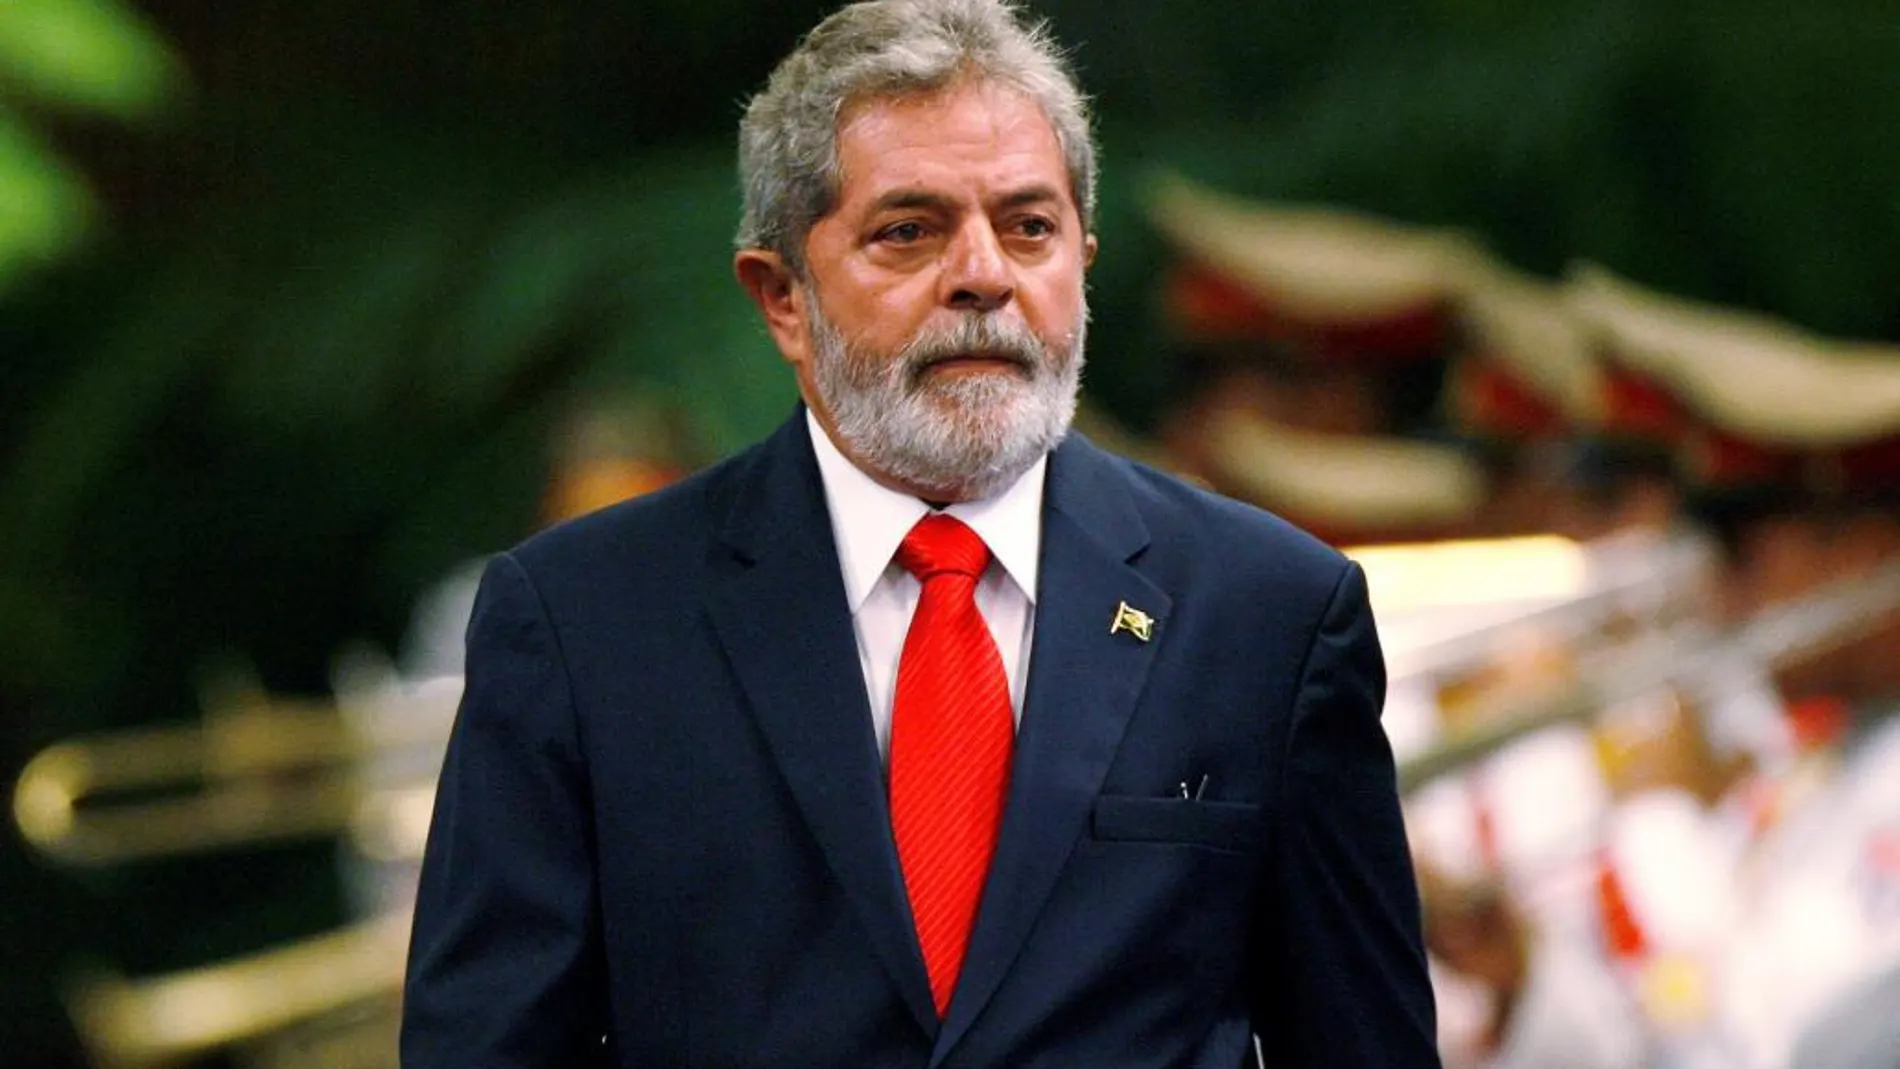 El ex presidente de Brasil, Luiz Inacio Lula da Silva, en imagen de archivo